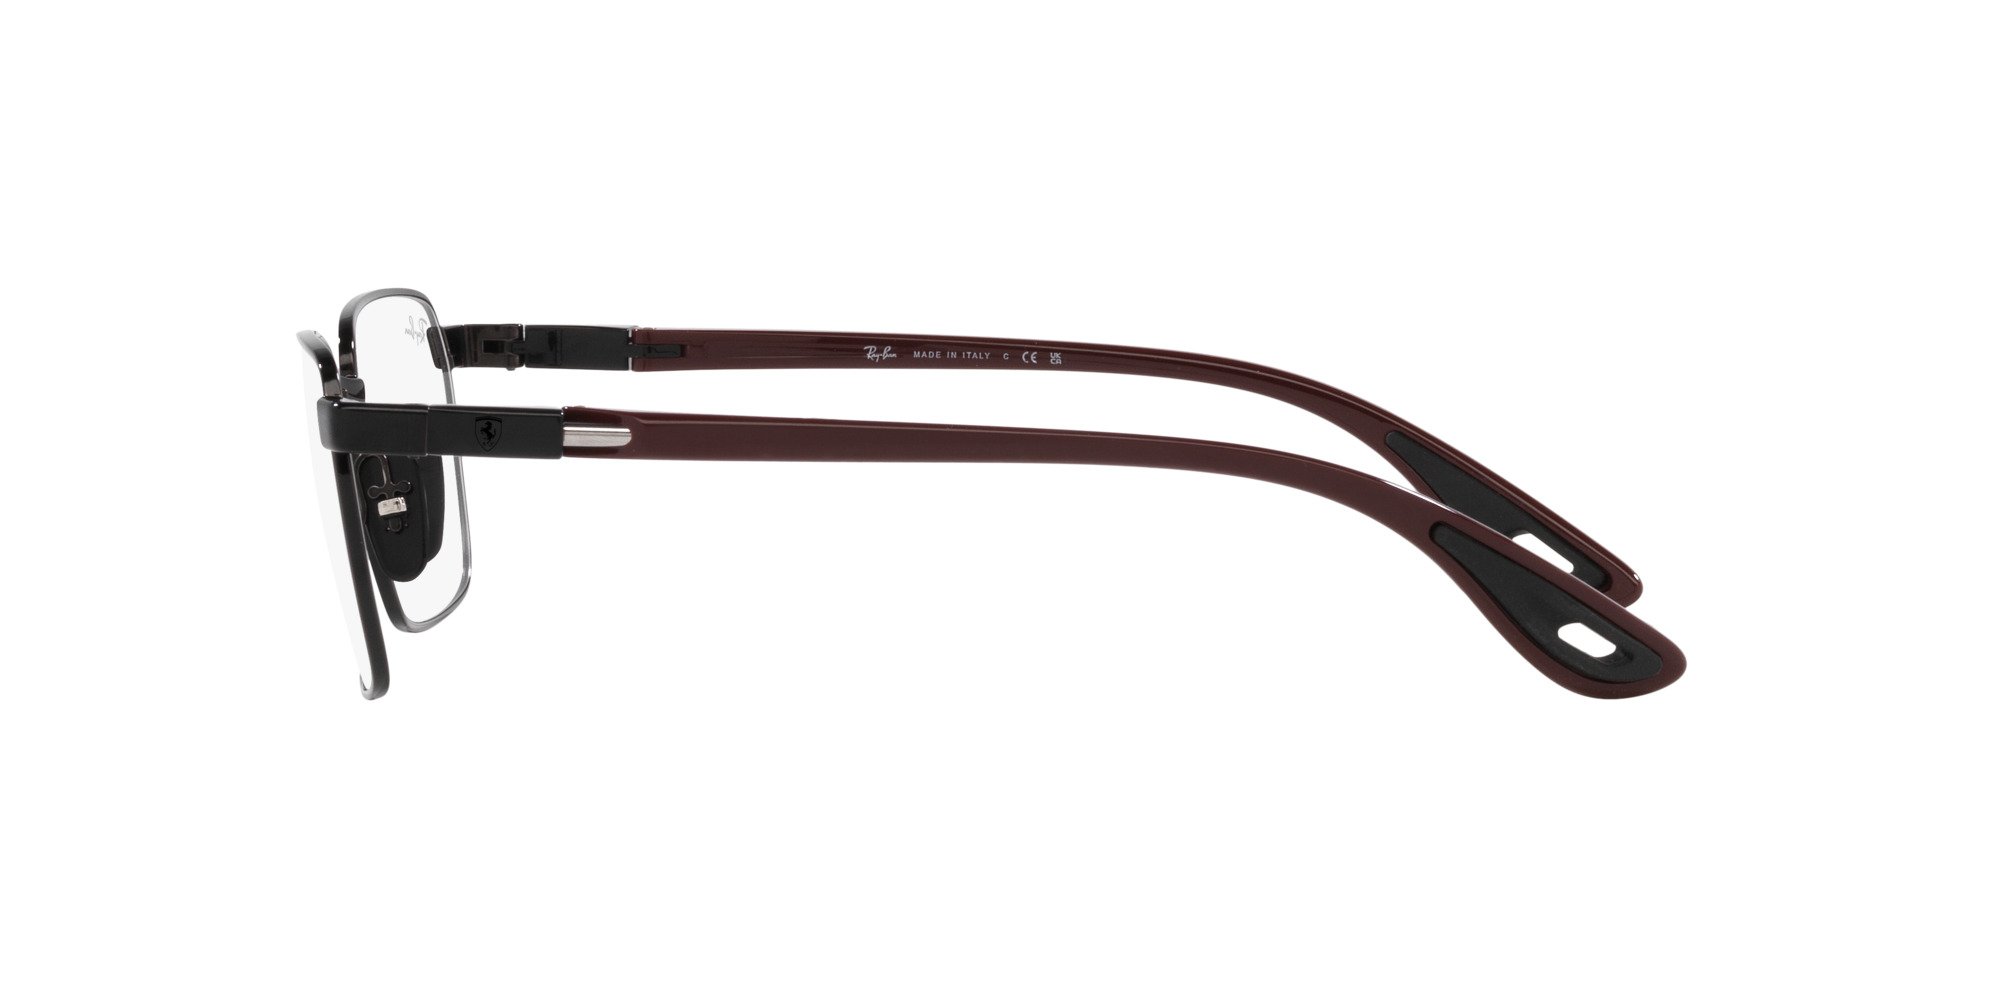 Das Bild zeigt die Korrektionsbrille RX6507M F020 von der Marke Ray Ban in Schwarz.